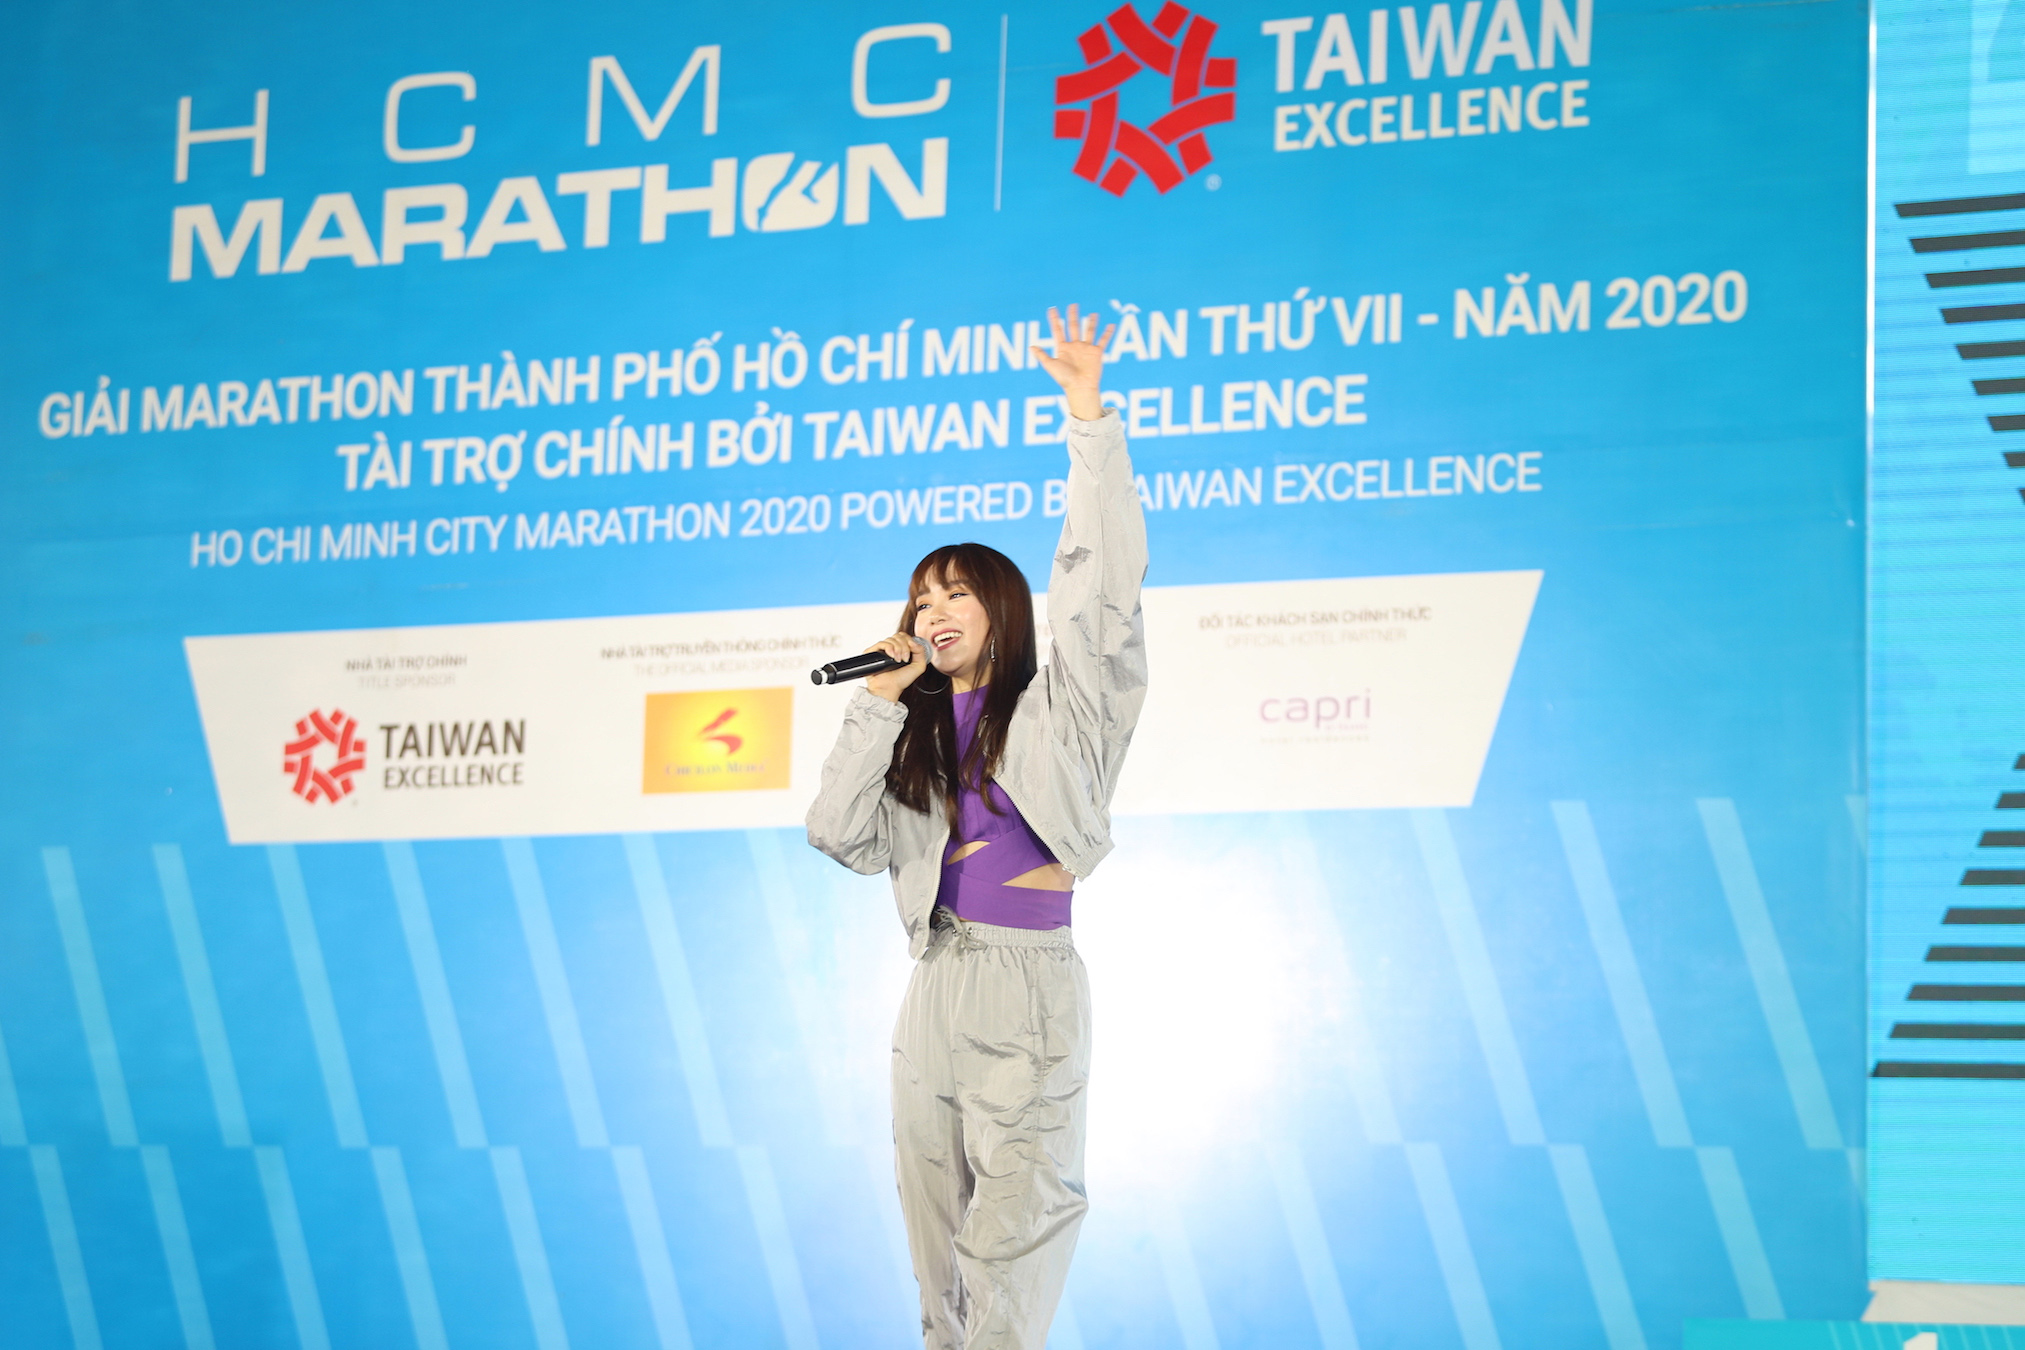 Taiwan Excellence đồng hành cùng HCMC MARATHON 2020 lan toả những giá trị ý nghĩa đến cộng đồng